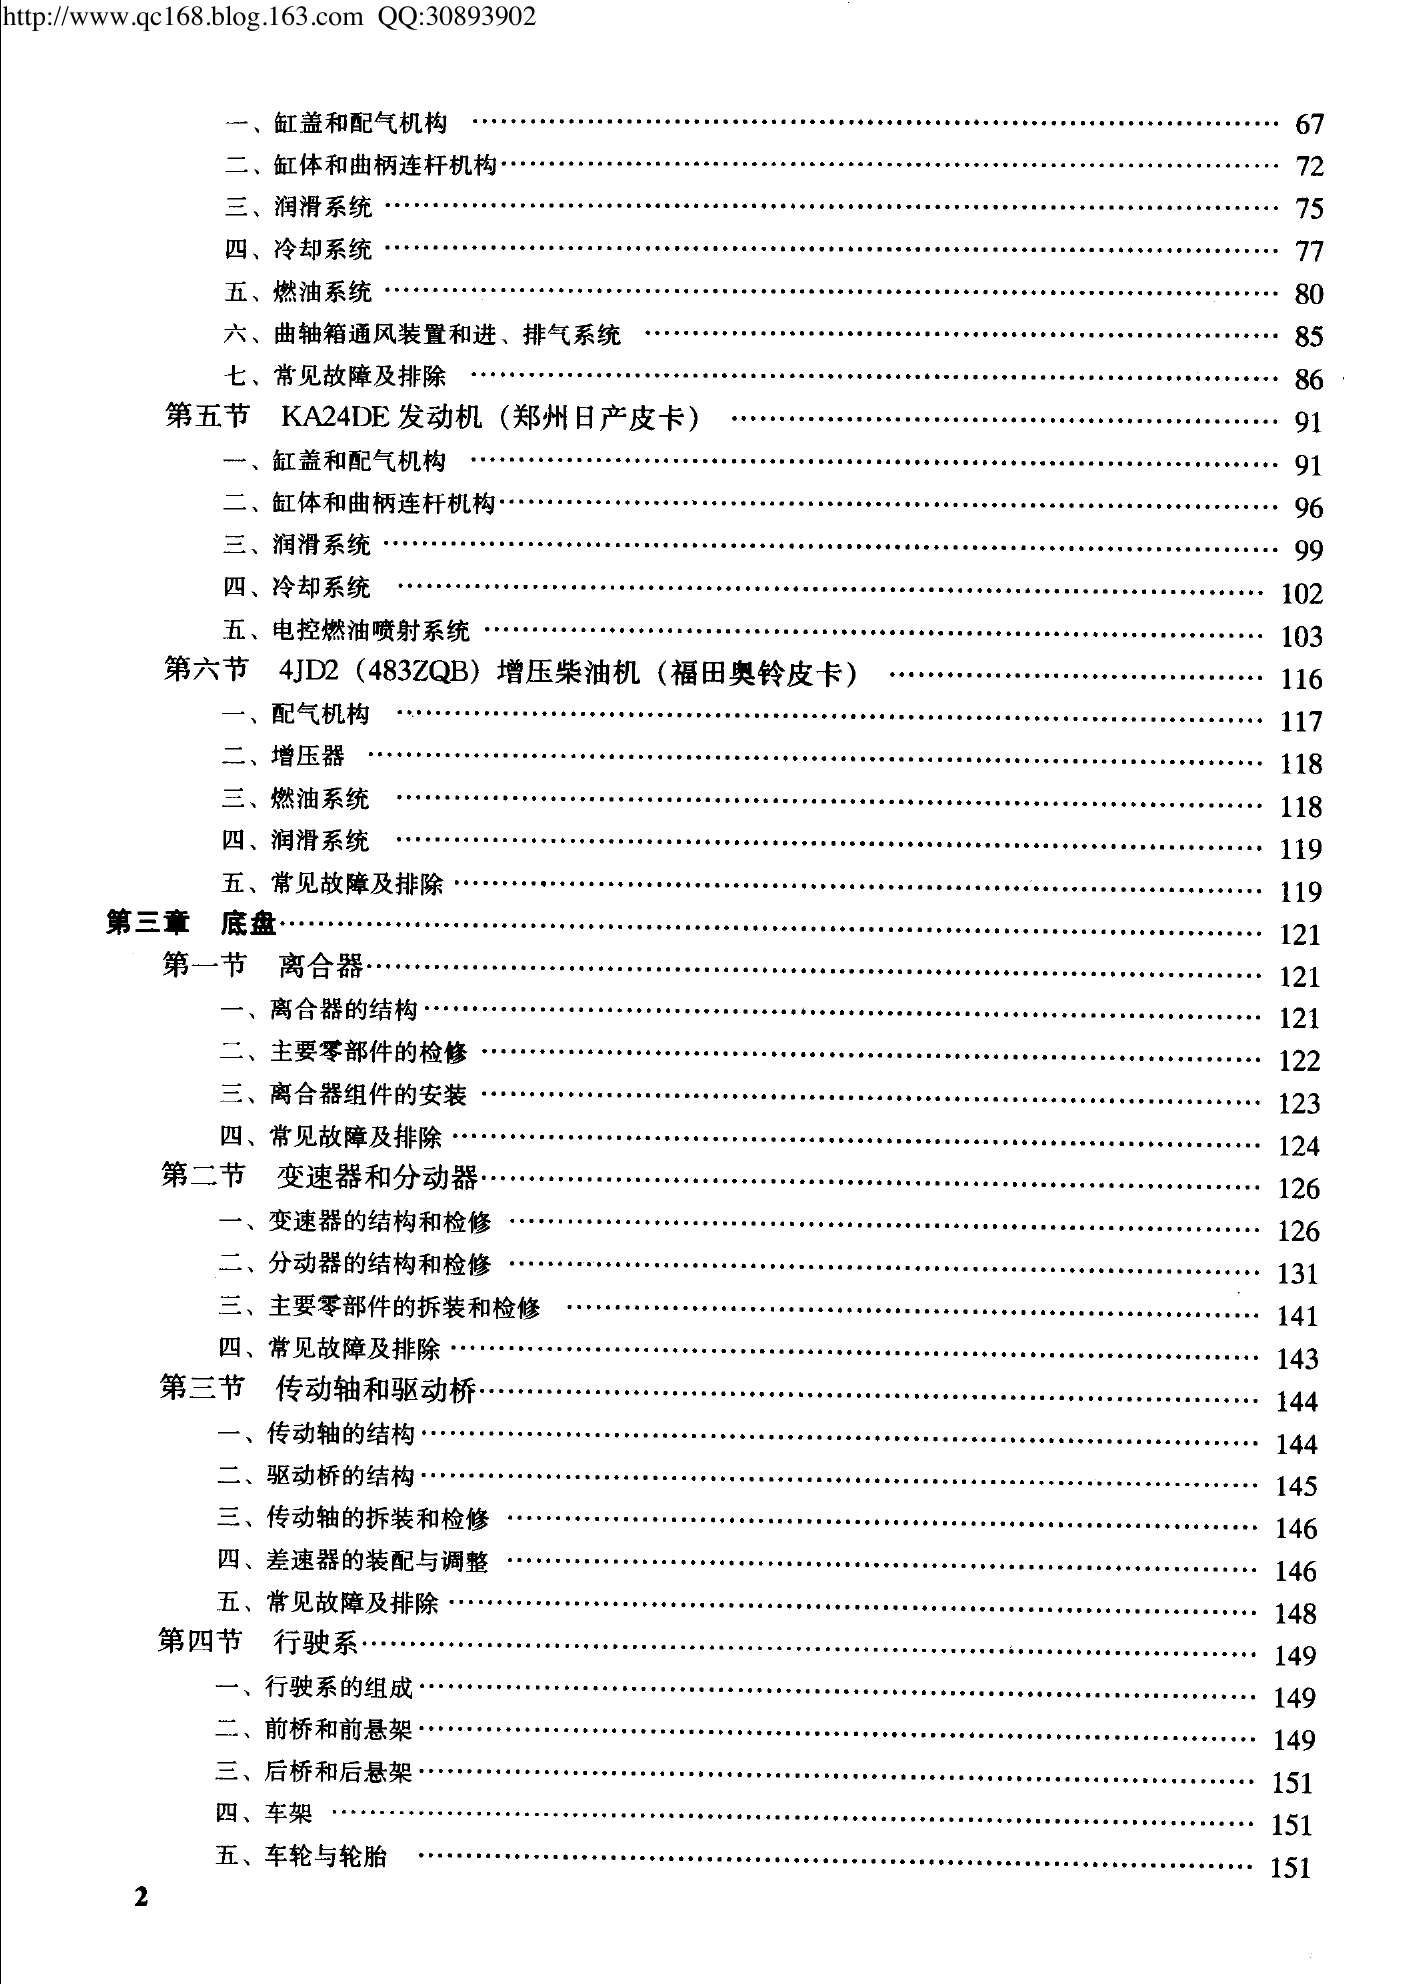 21.国产皮卡汽车维修手册.pdf-第7页.png